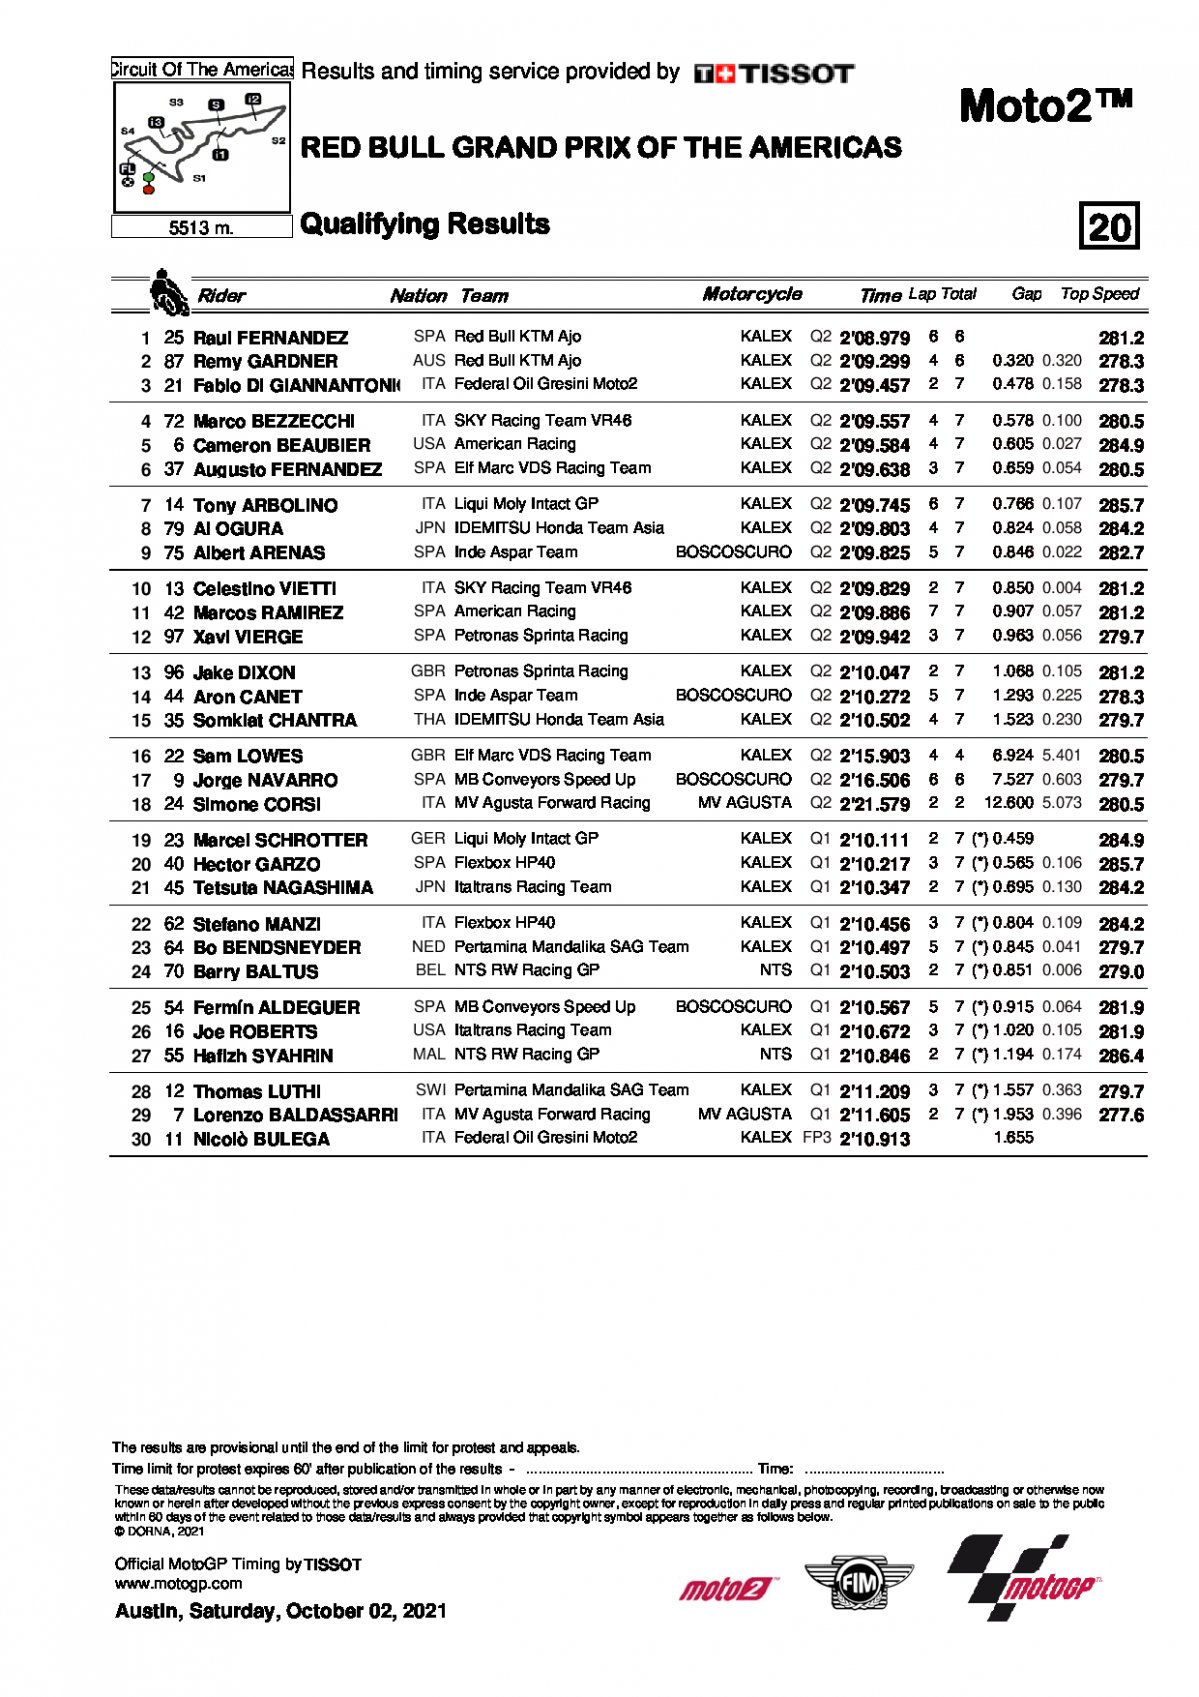 Результаты квалификации AmericasGP / Moto2 (2/10/2021)